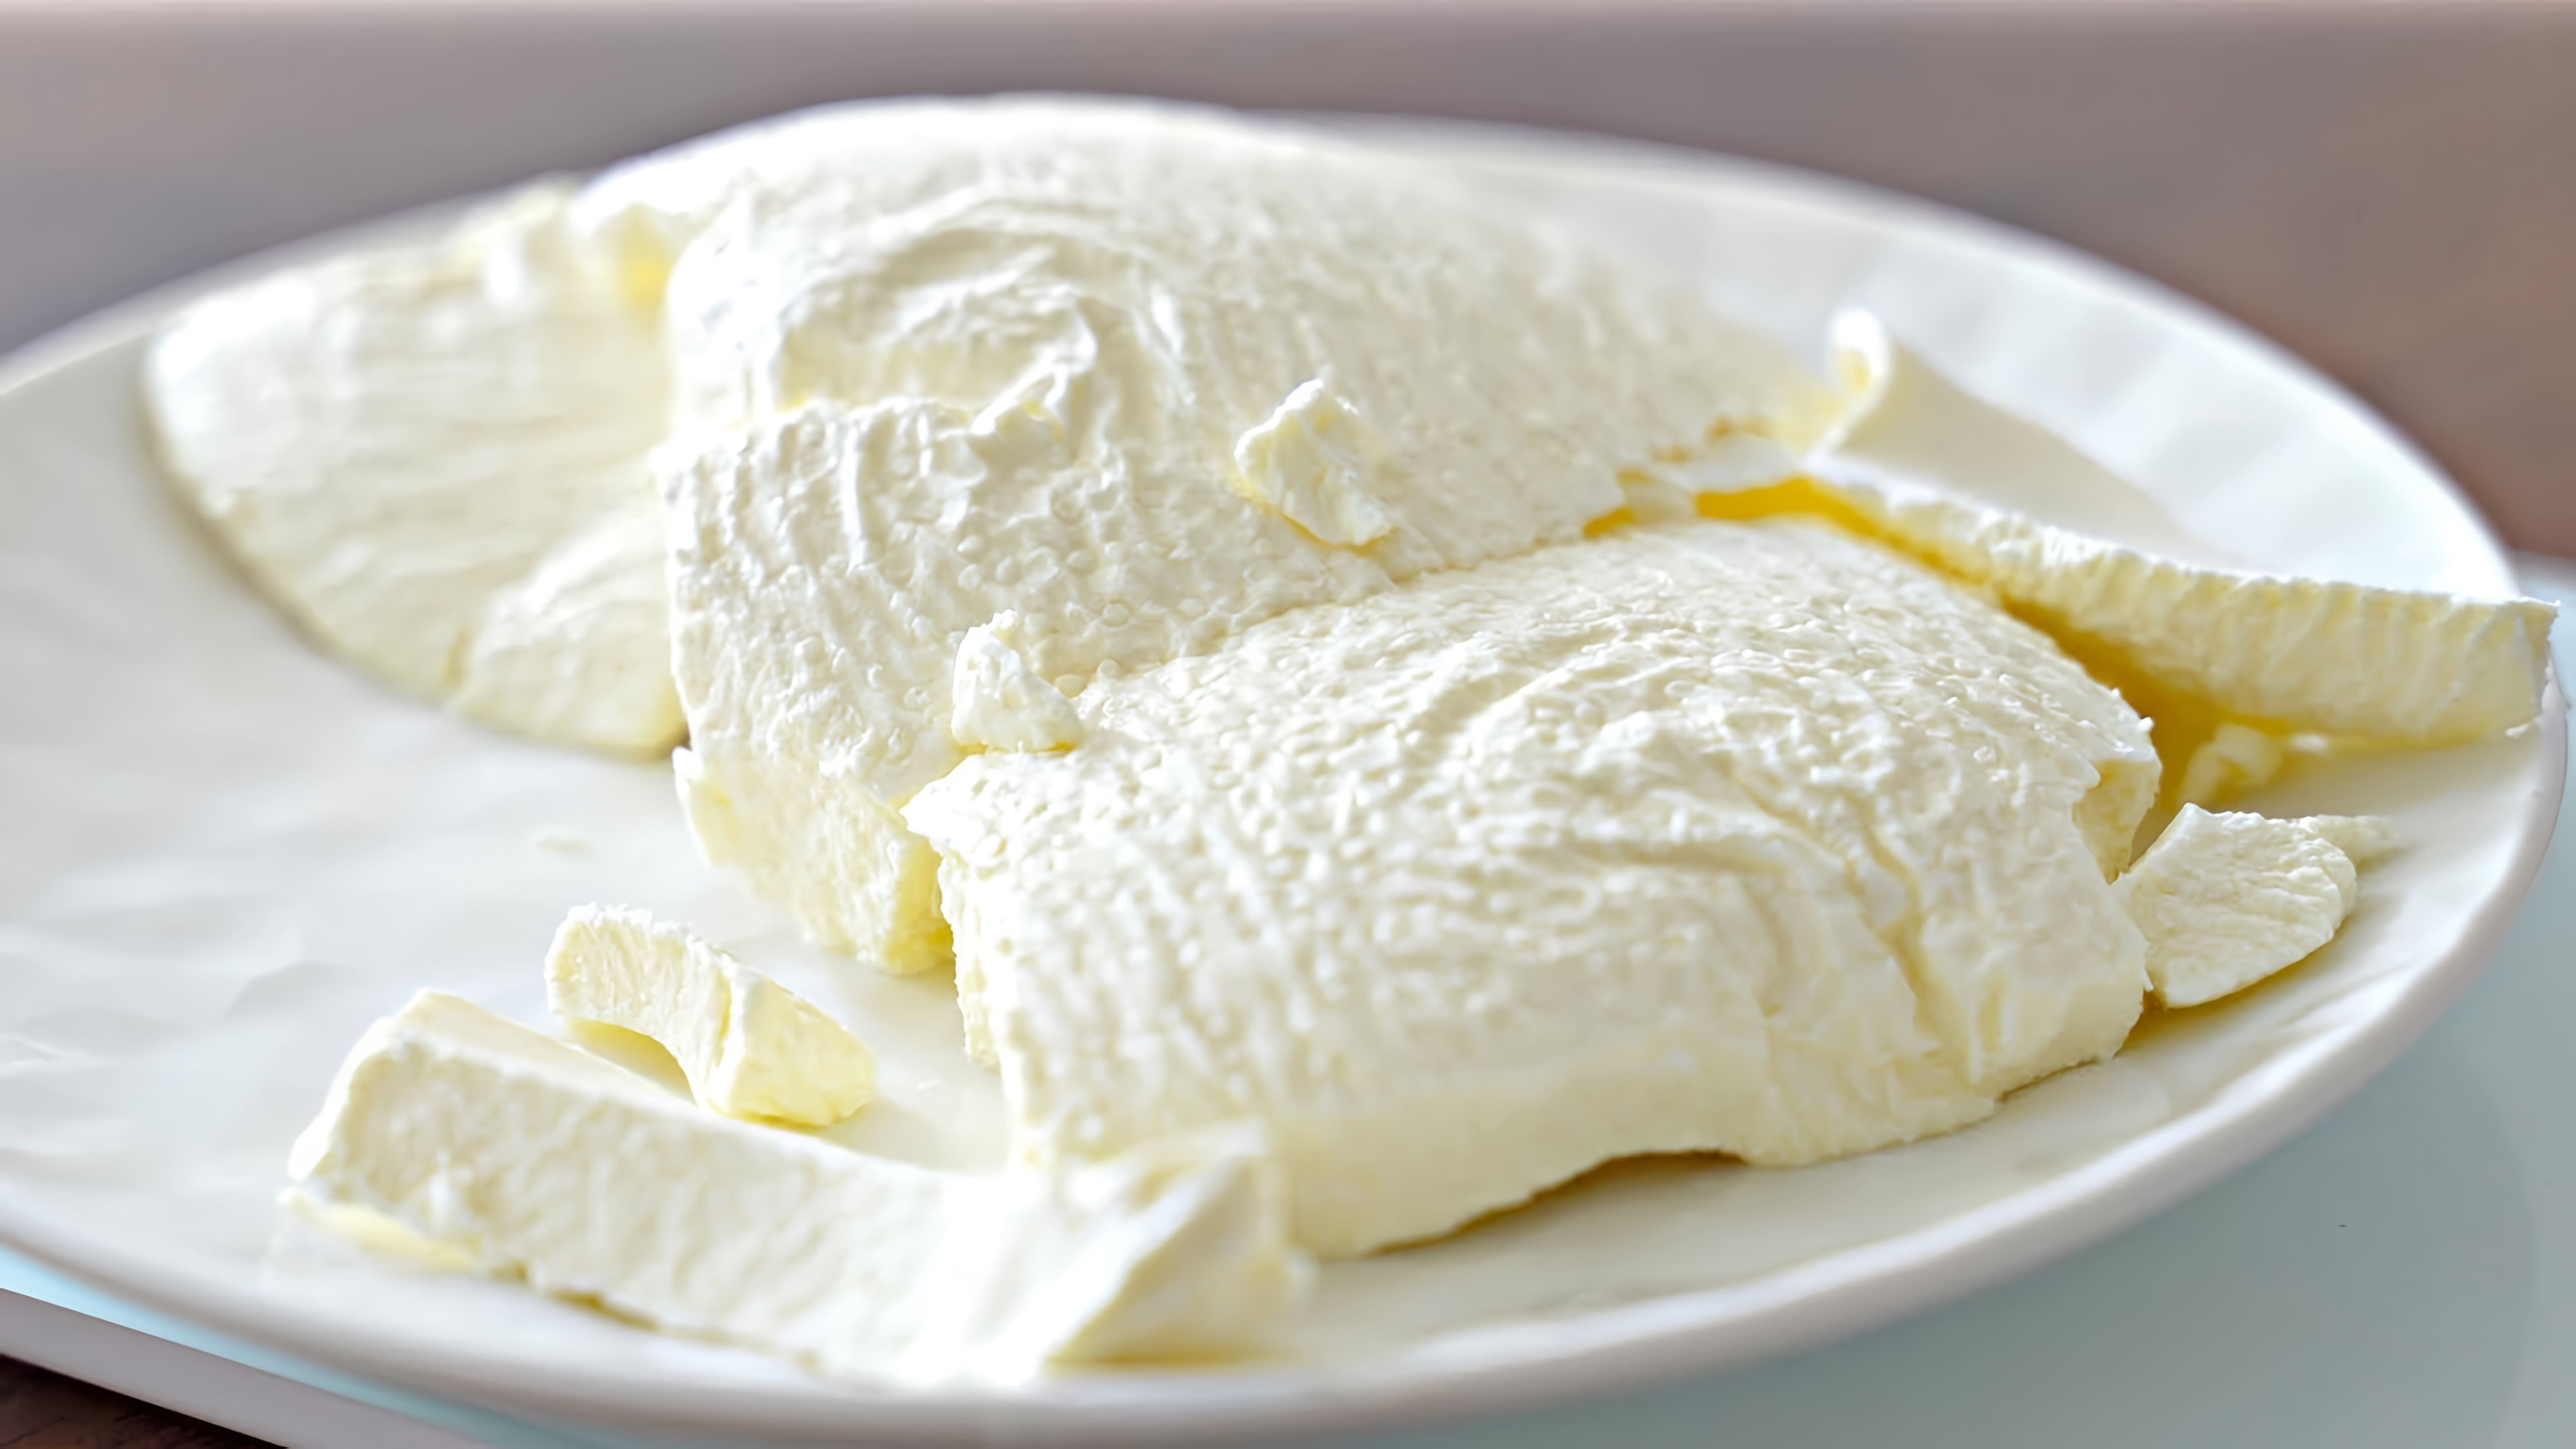 Видео как приготовить домашний сливочный сыр, используя только два ингредиента: сметану и молоко